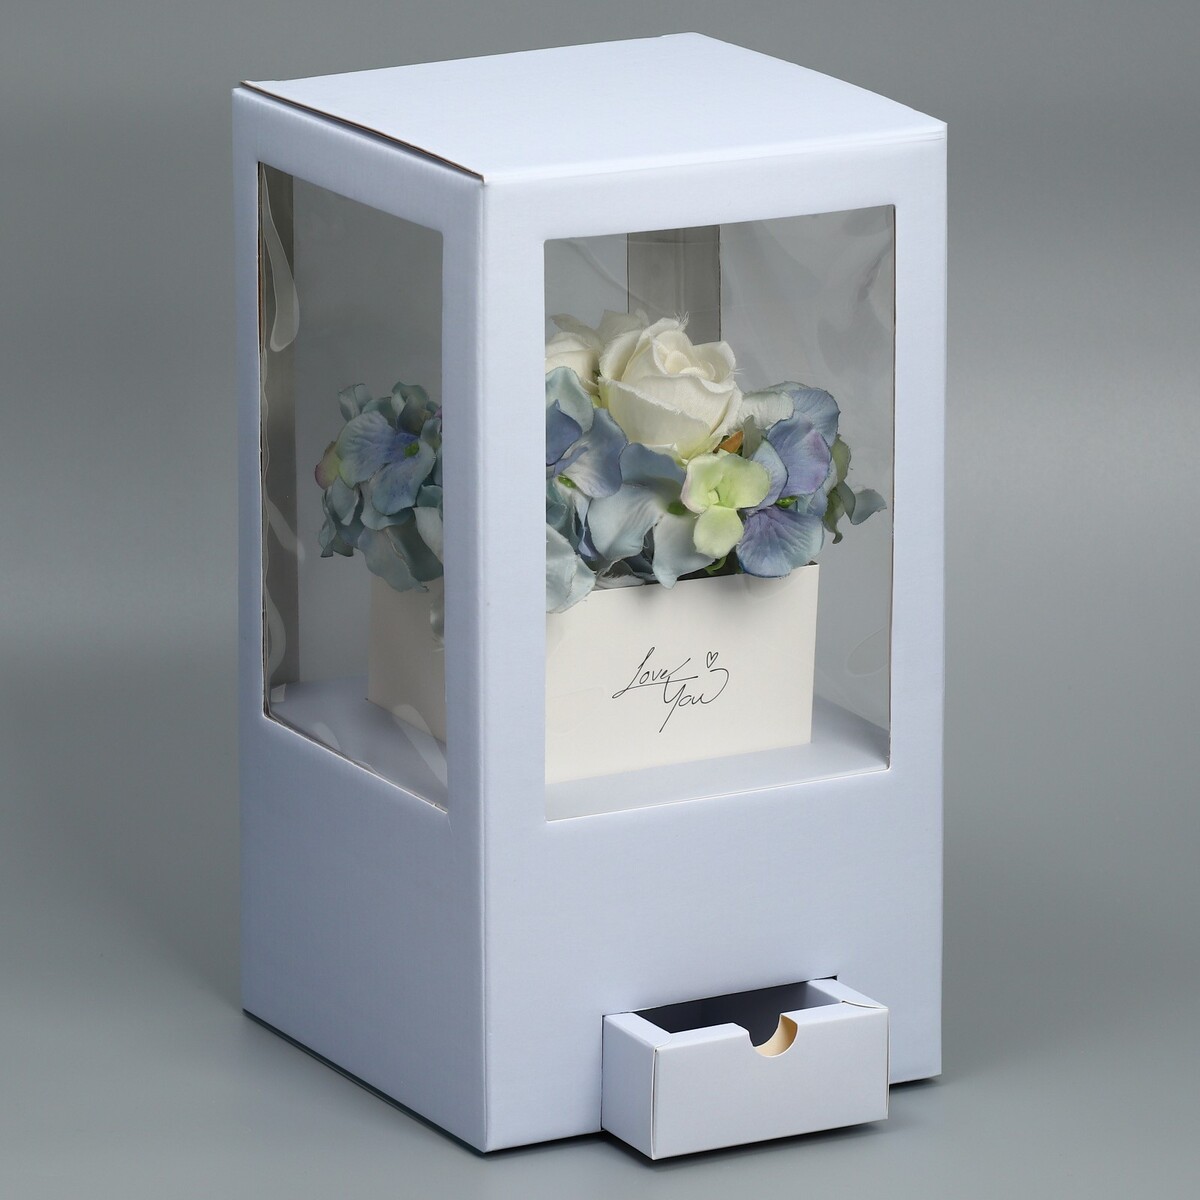 Коробка подарочная для цветов с вазой из мгк складная, упаковка, коробка для ов с вазой и pvc окнами складная розовый 23 х 30 х 23 см